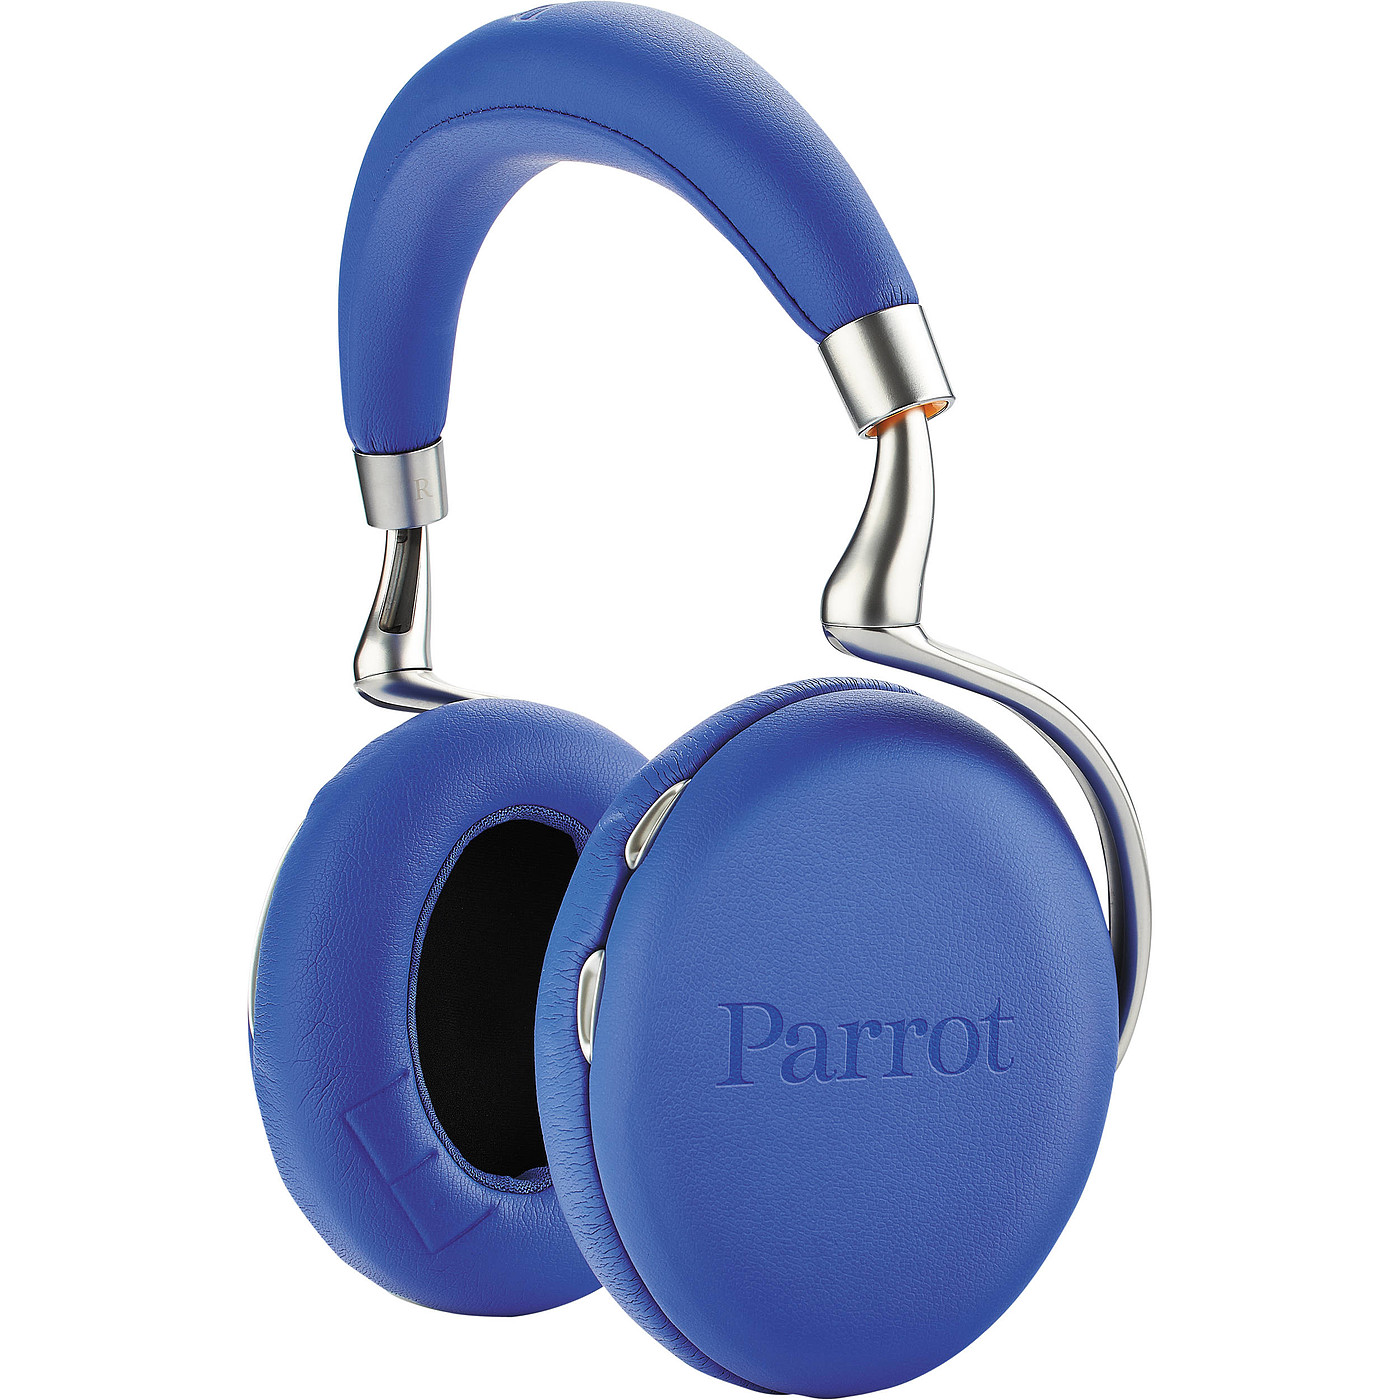 数码产品，降噪，蓝牙耳机，Parrot Zik 2.0，派诺特，